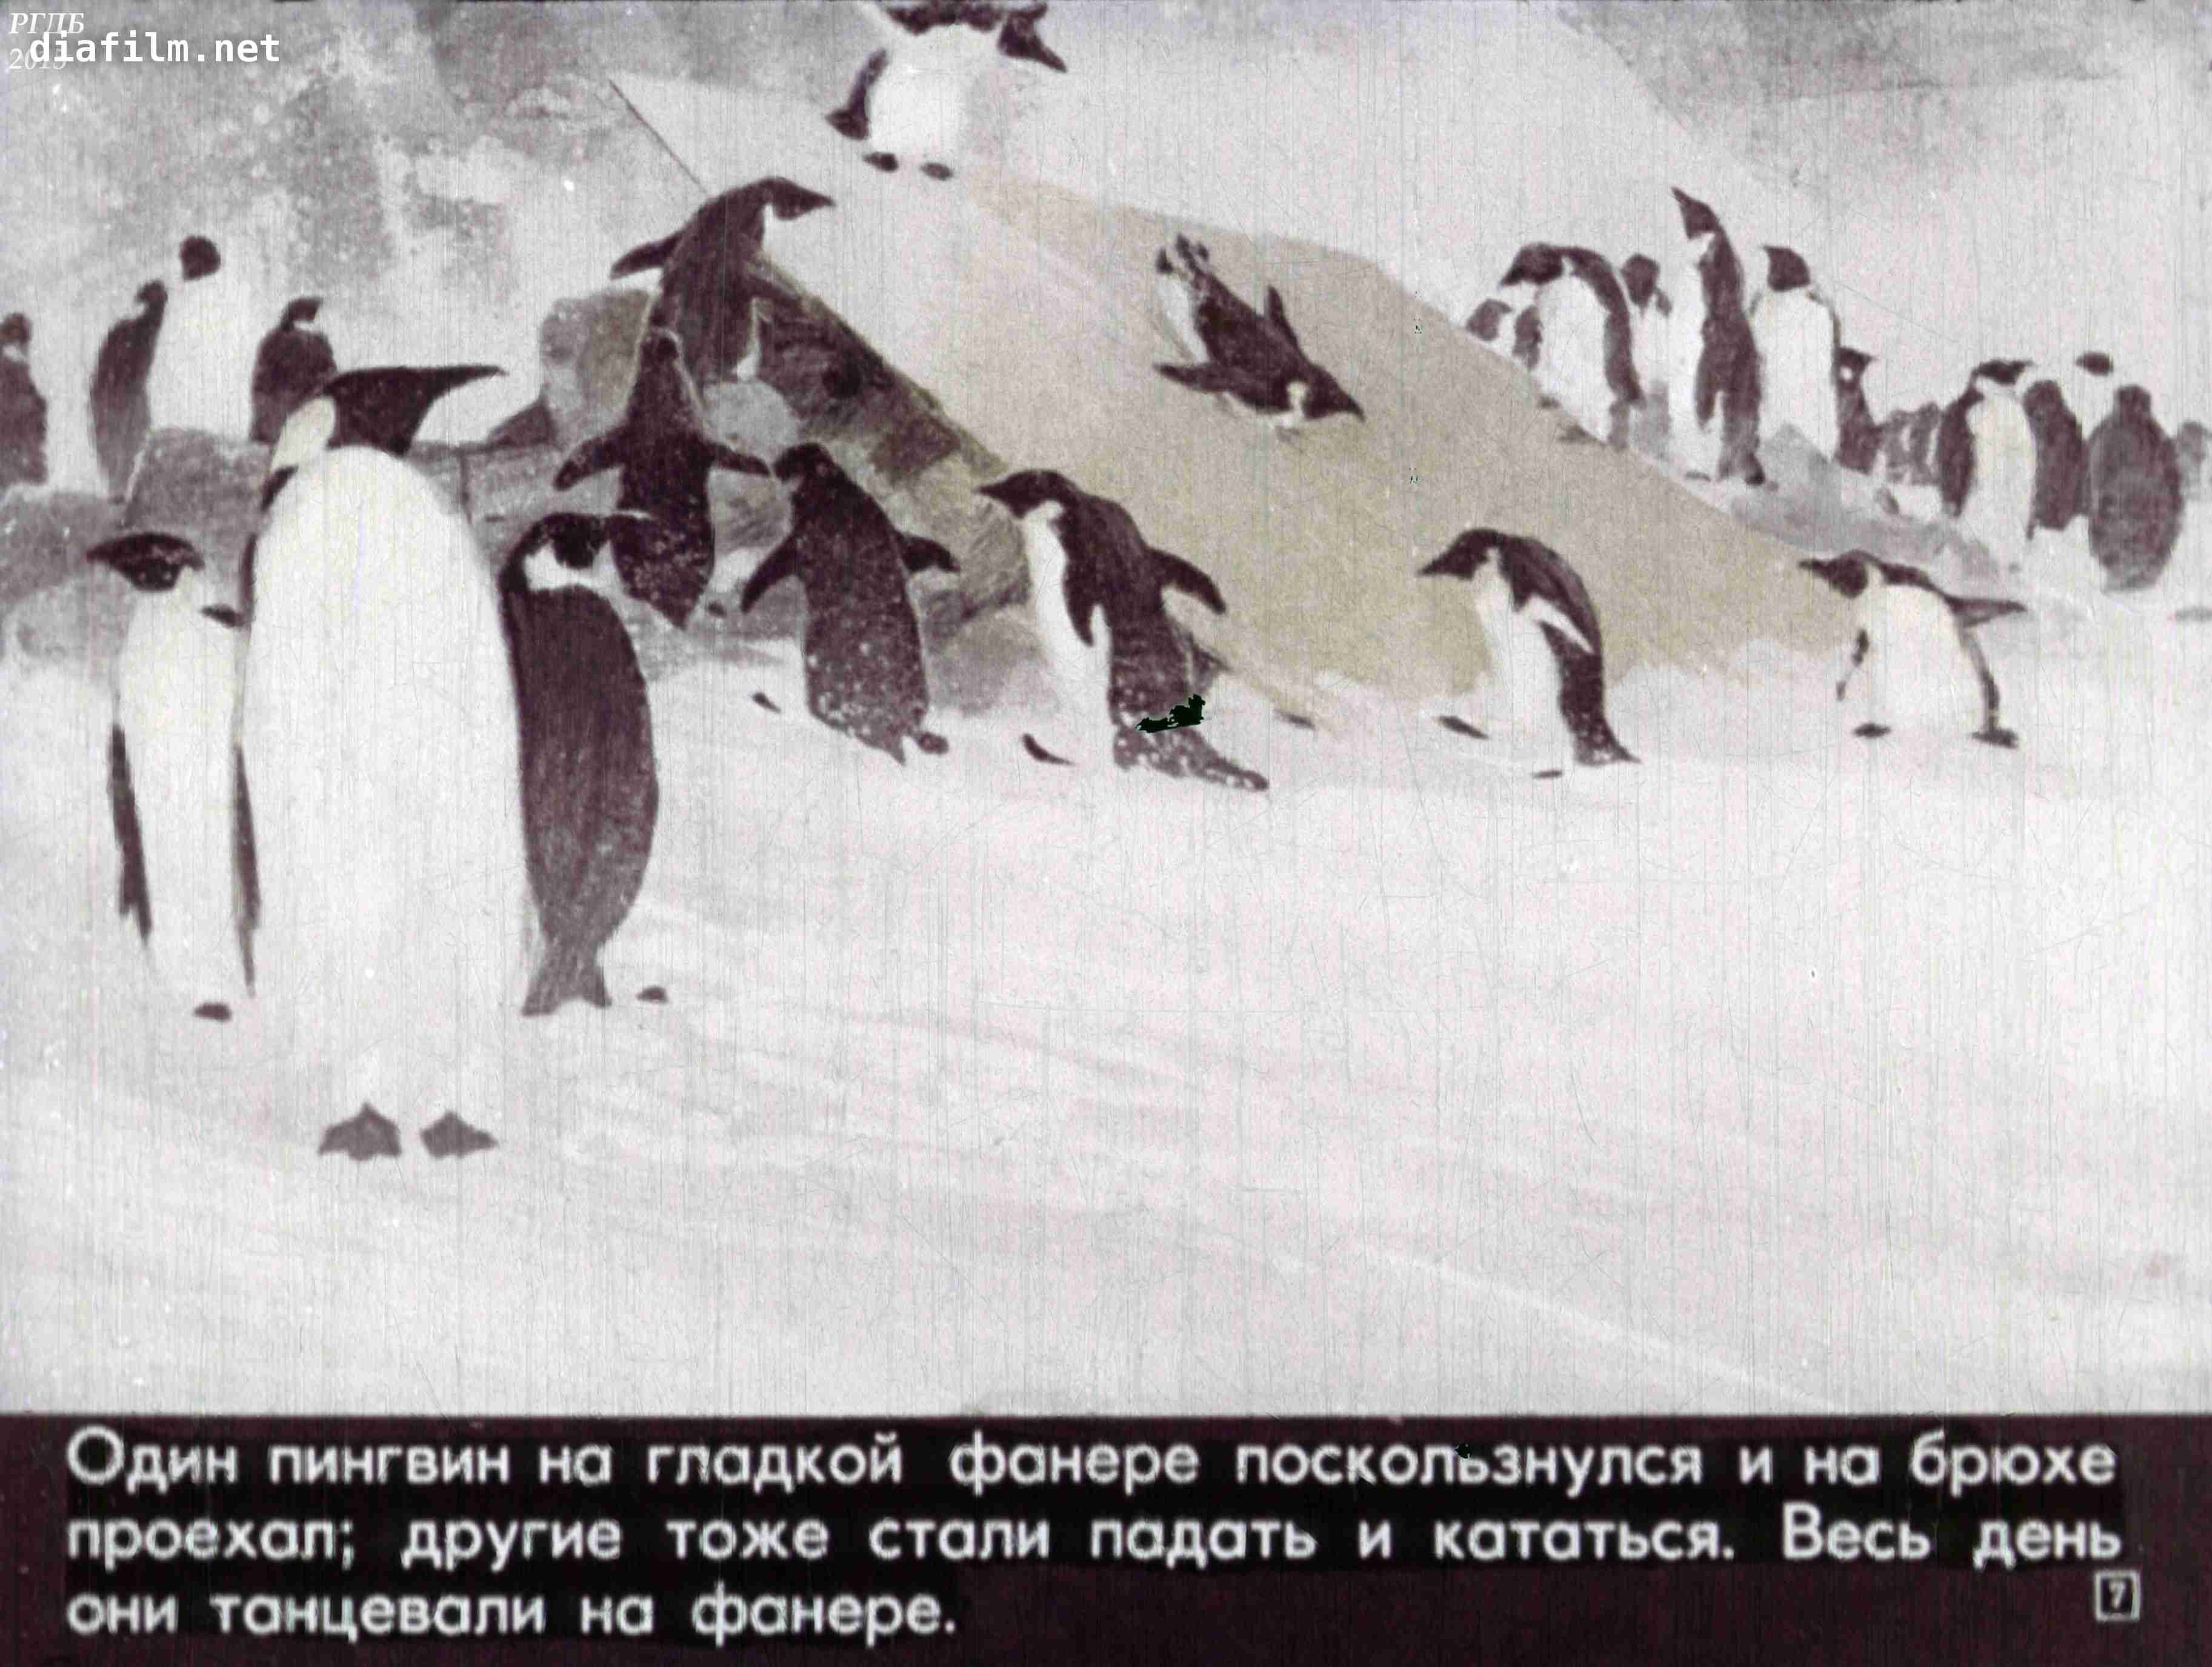 Пересказ снегирева про пингвинов в старшей группе. Рассказ про пингвинов Снегирев. Г Снегирев Пингвиний пляж. Г Снегирева про пингвинов рассказ. Иллюстрации рассказа про пингвинов Снегирёв.